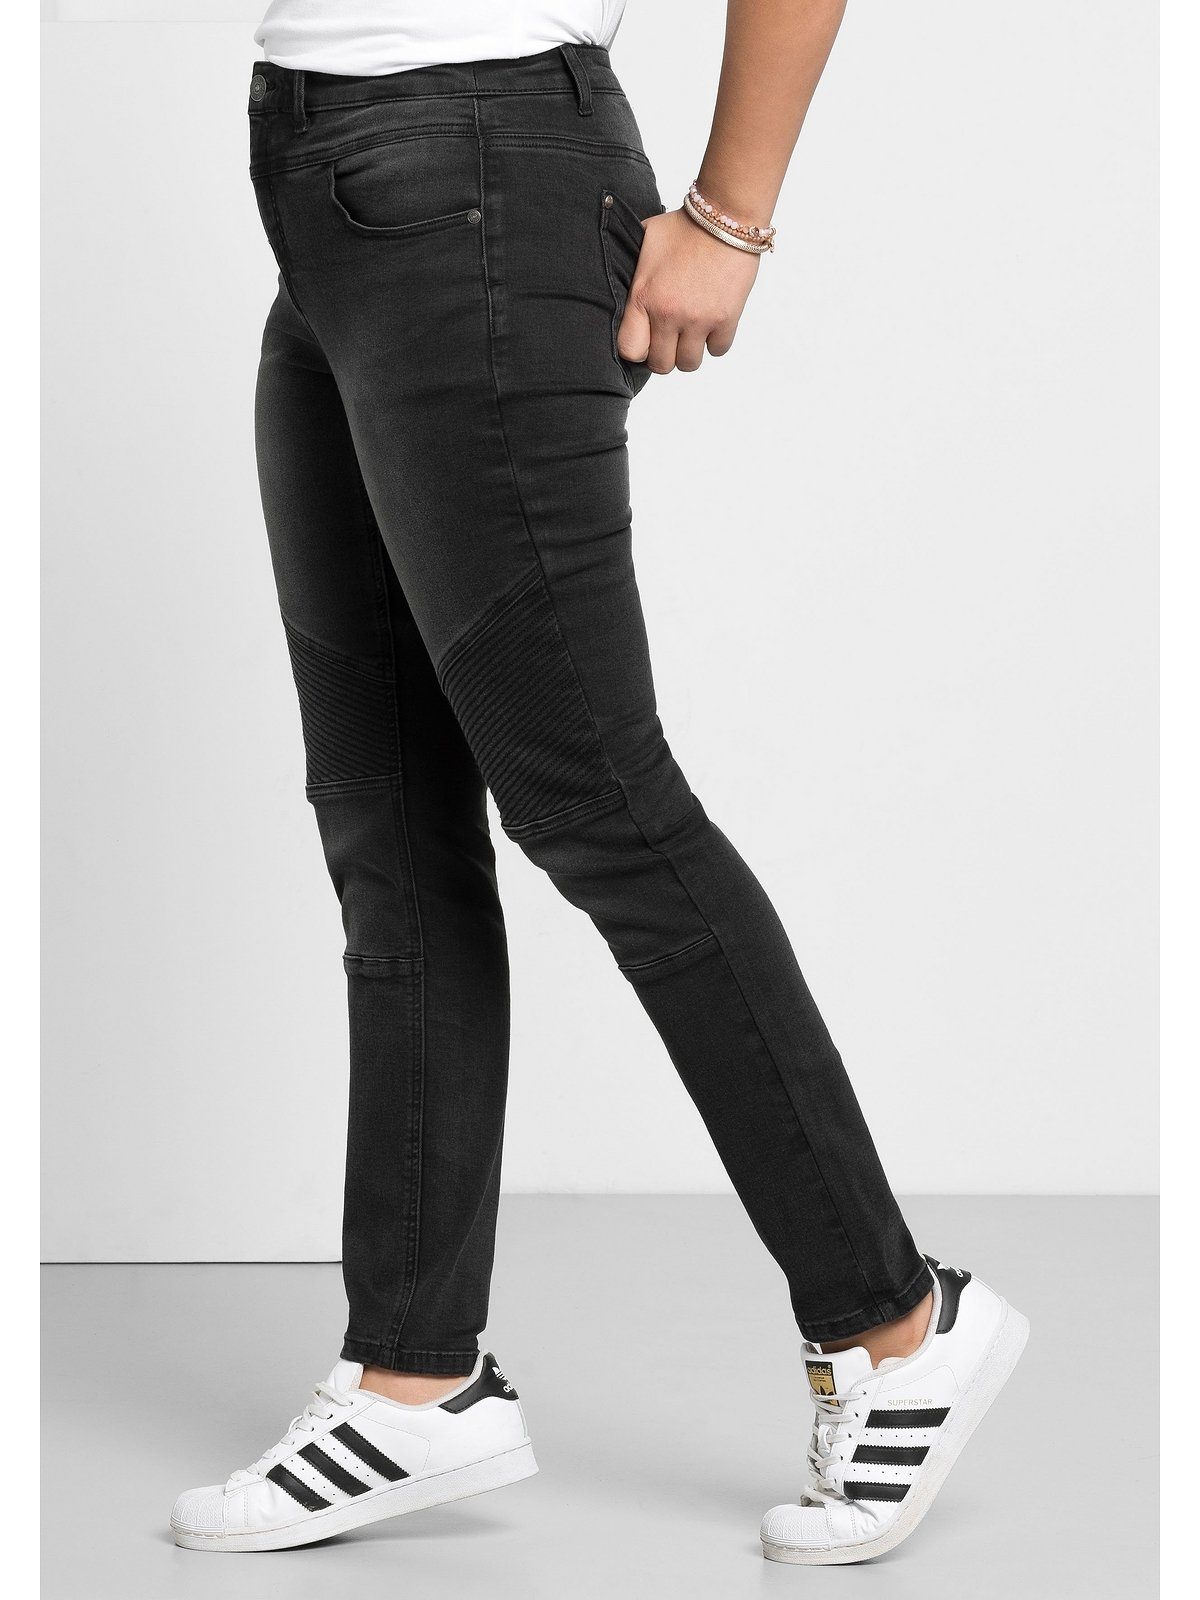 Schwarze Jeans Große Größe für Damen online kaufen | OTTO